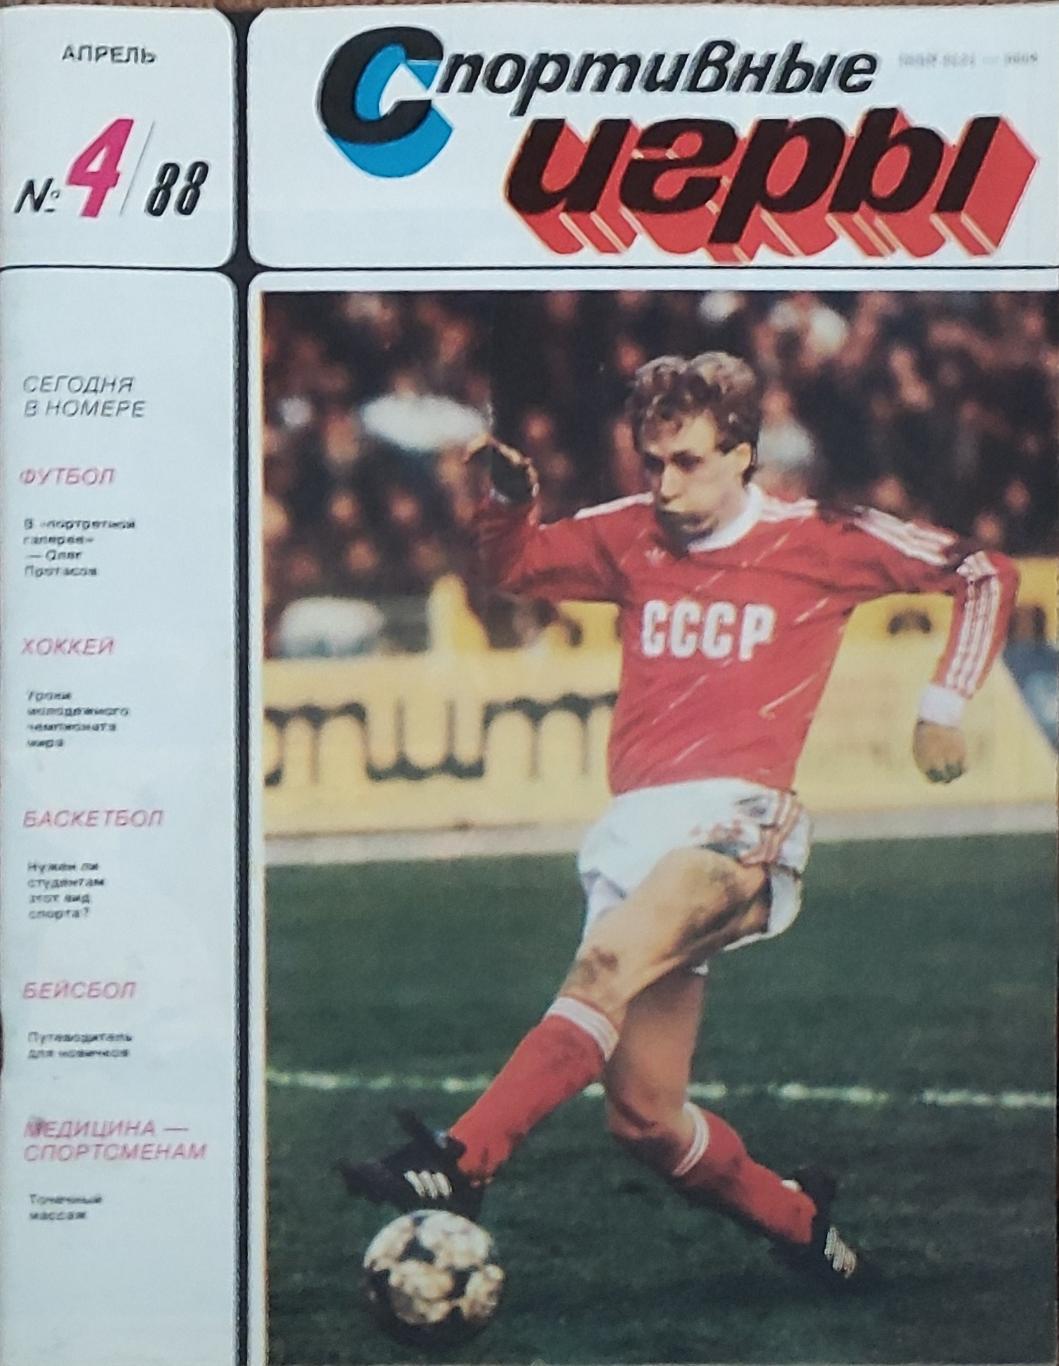 Журнал Спортивные игры 1988 номер 4